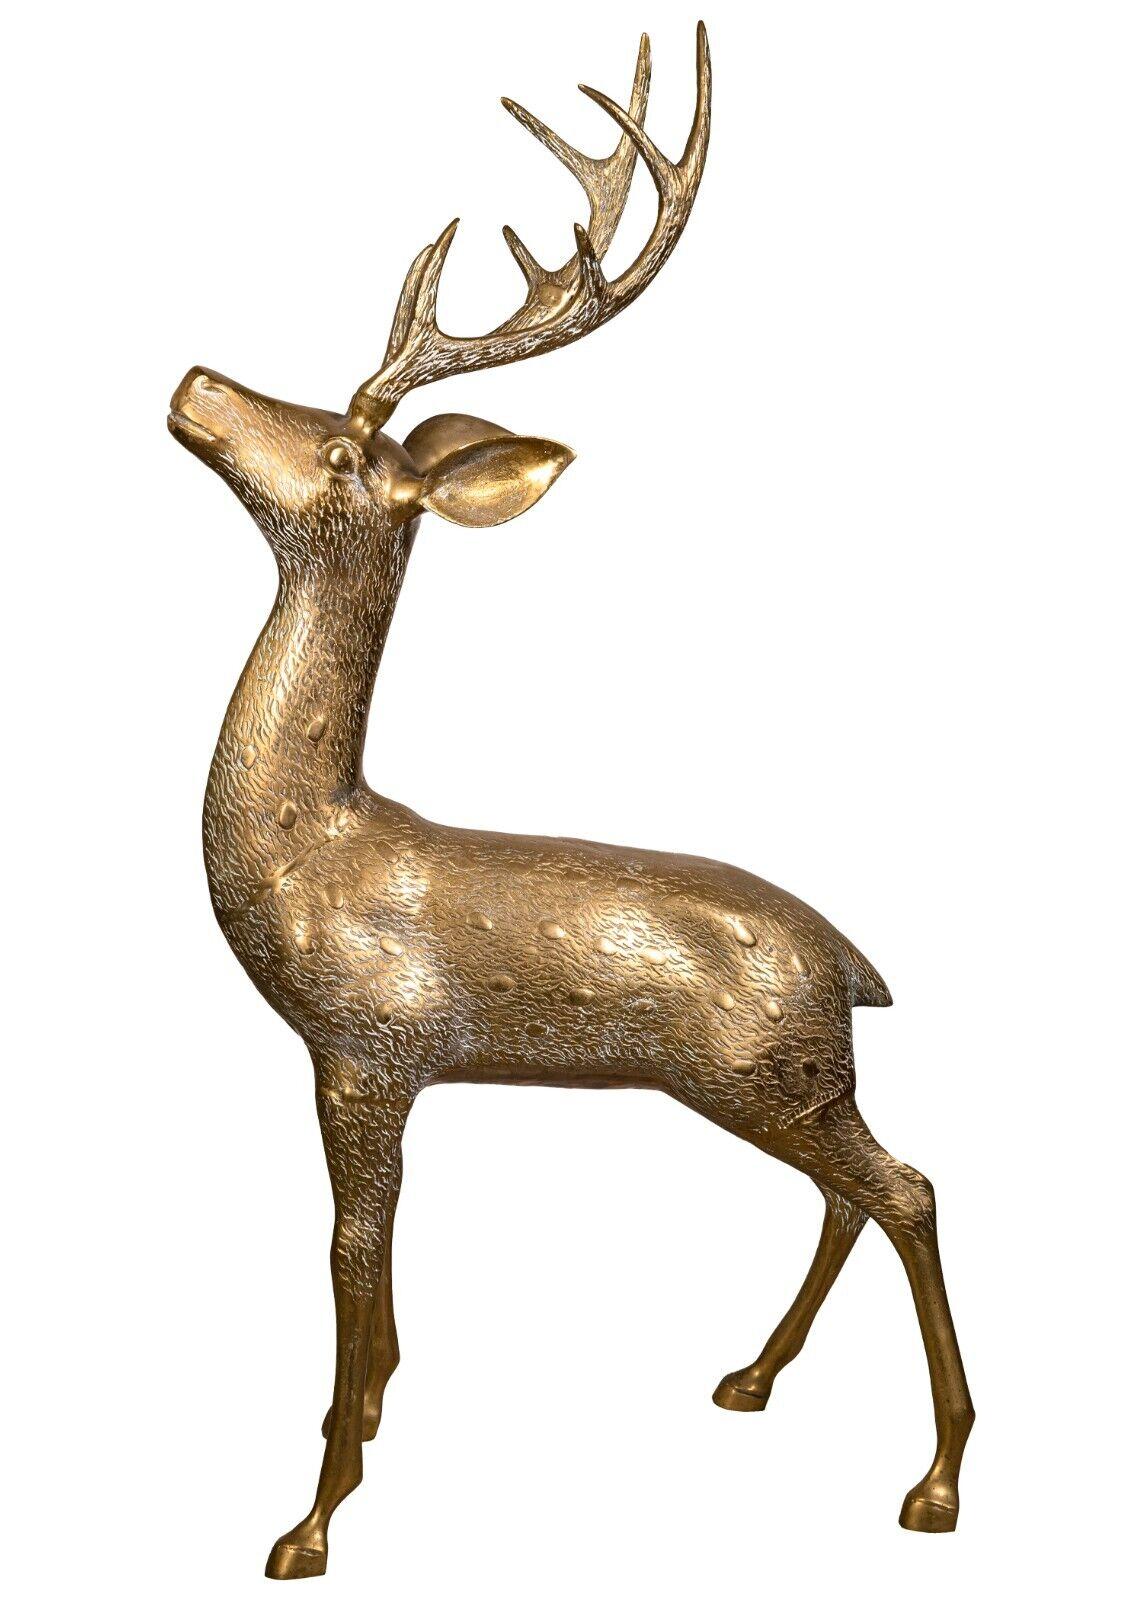 brass deer figurines